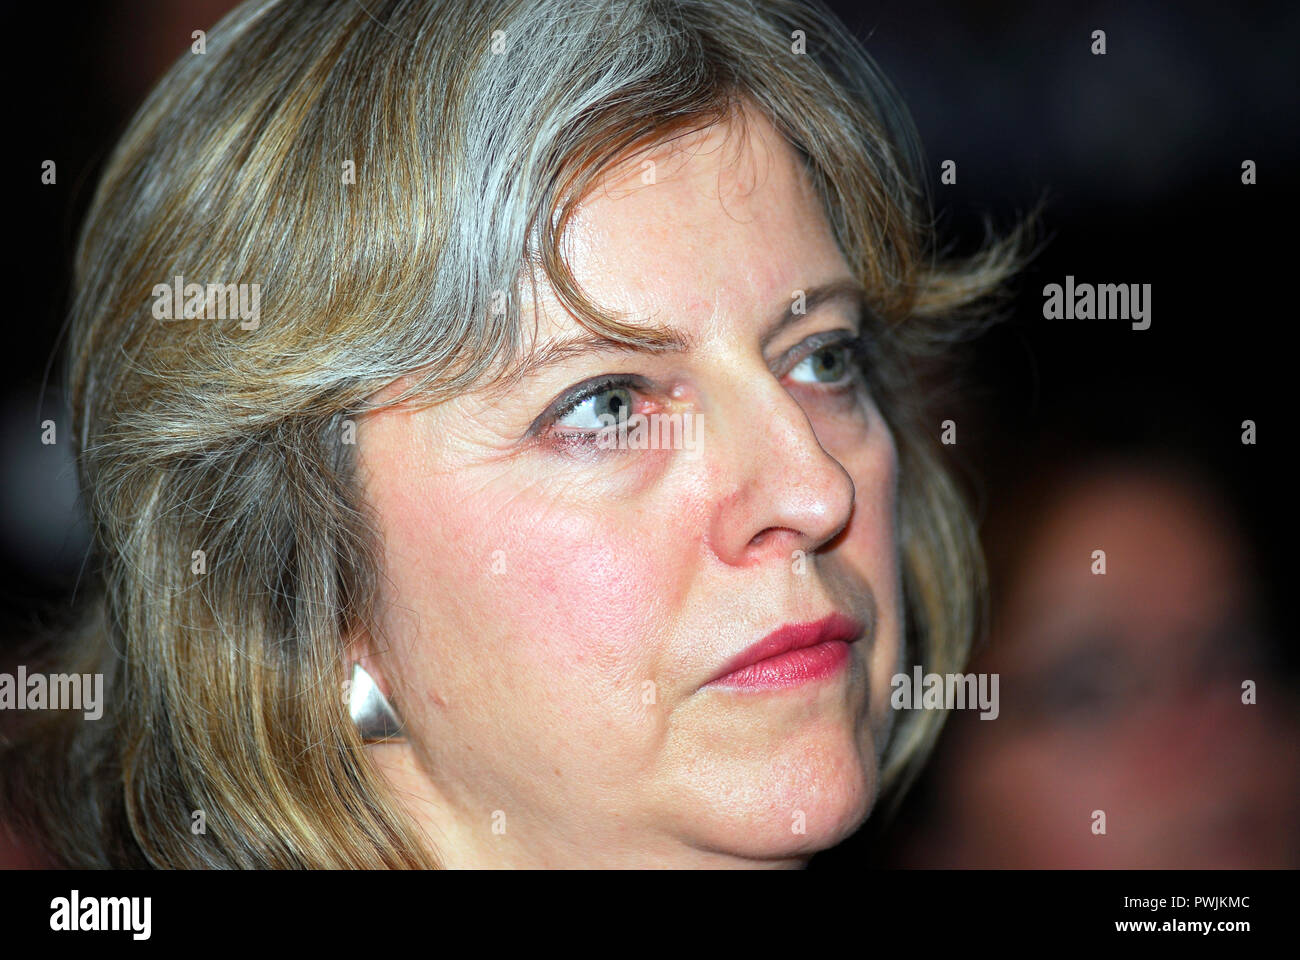 Theresa May MP (1. Oktober 1956 geboren), der britische Premierminister seit 2016 & MP für Maidenhead, Berkshire. Fotografiert, wenn sie Schatten Führer war... Stockfoto